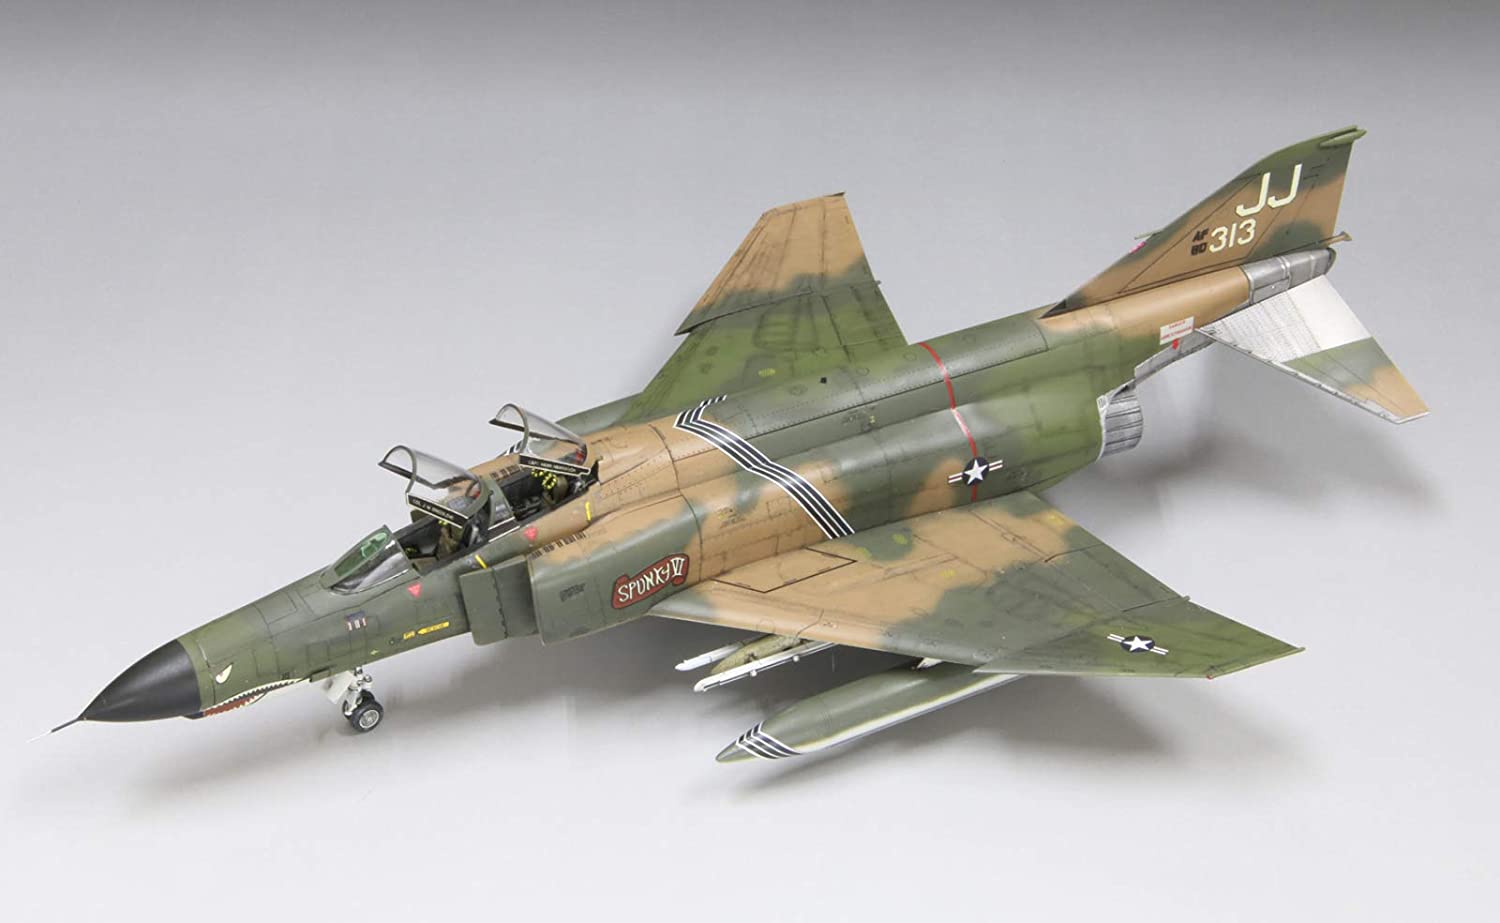 FP41 USAF F-4E `Vietnam War`